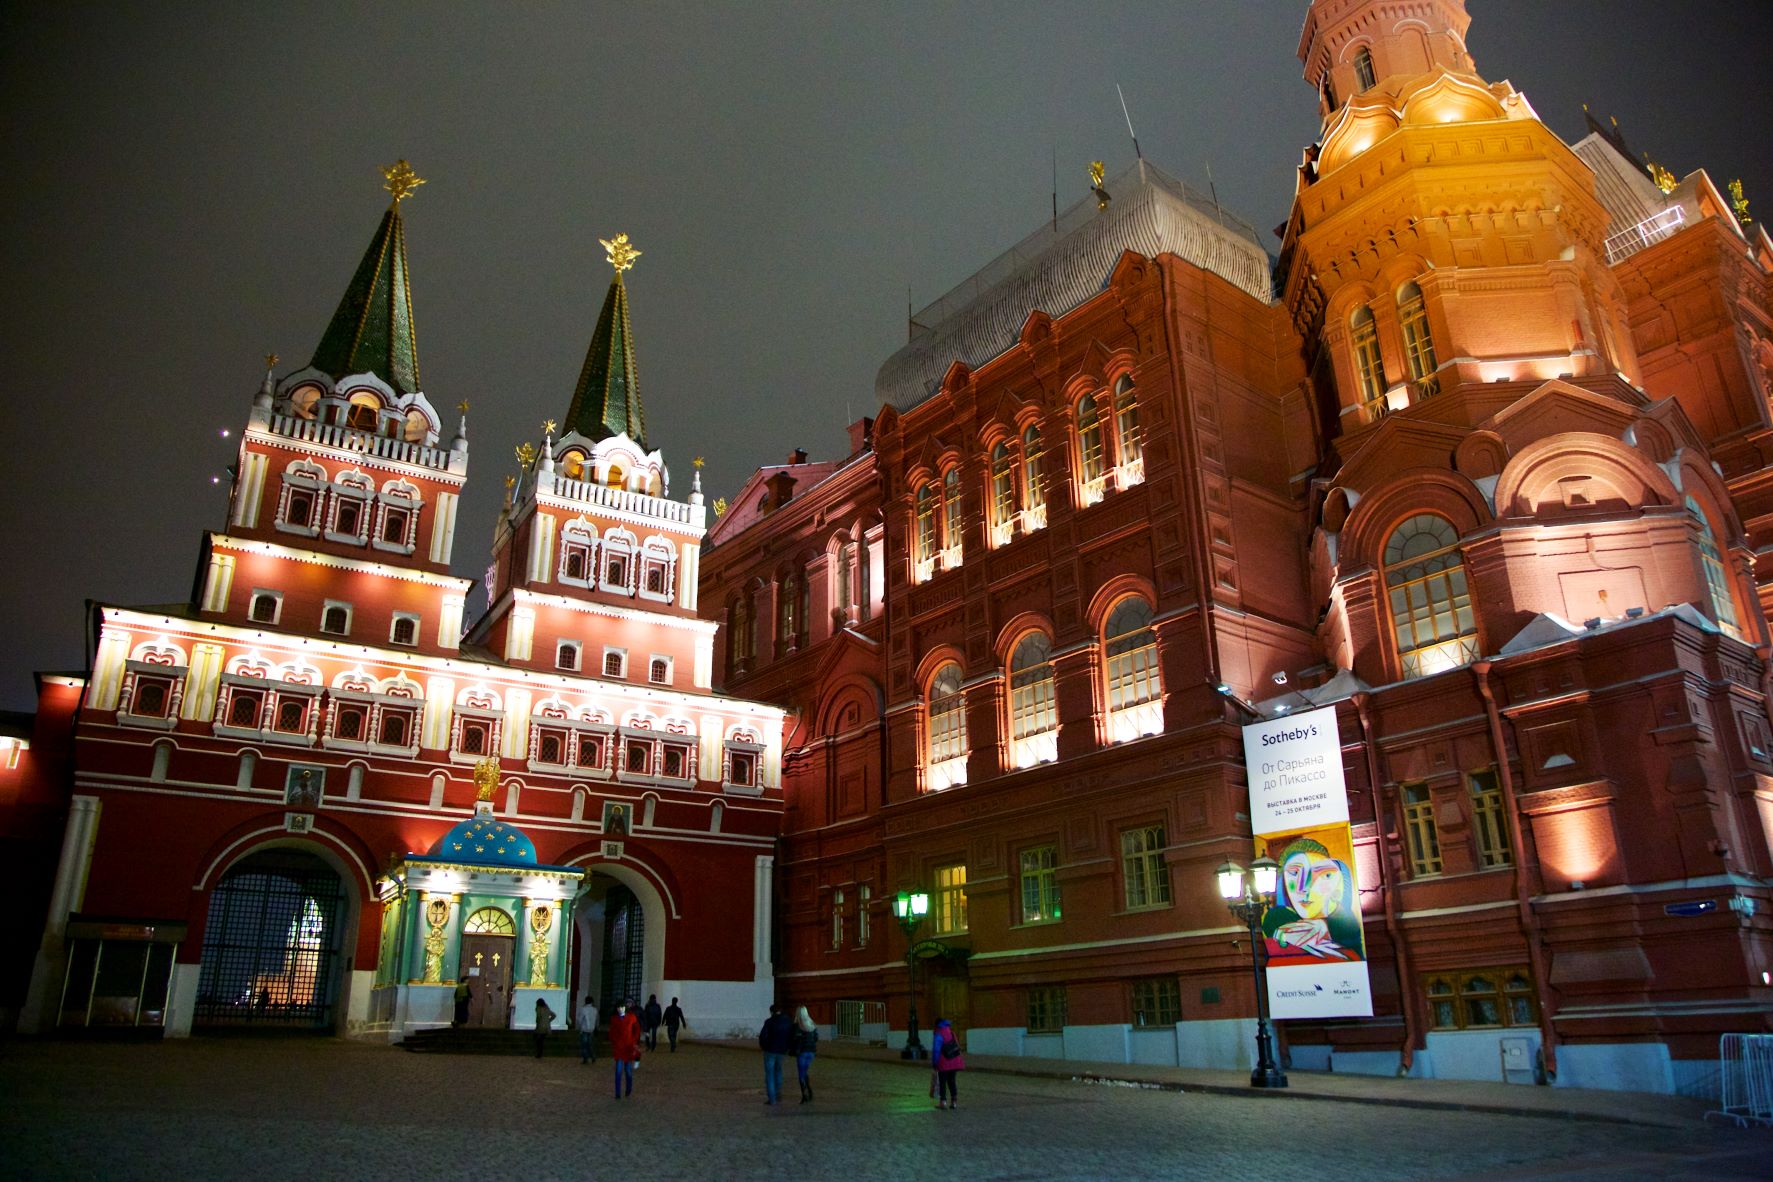 Προαναγγελία παλαιότερης δημοπρασίας του Sotheby's με έργα Πικάσο στη Μόσχα